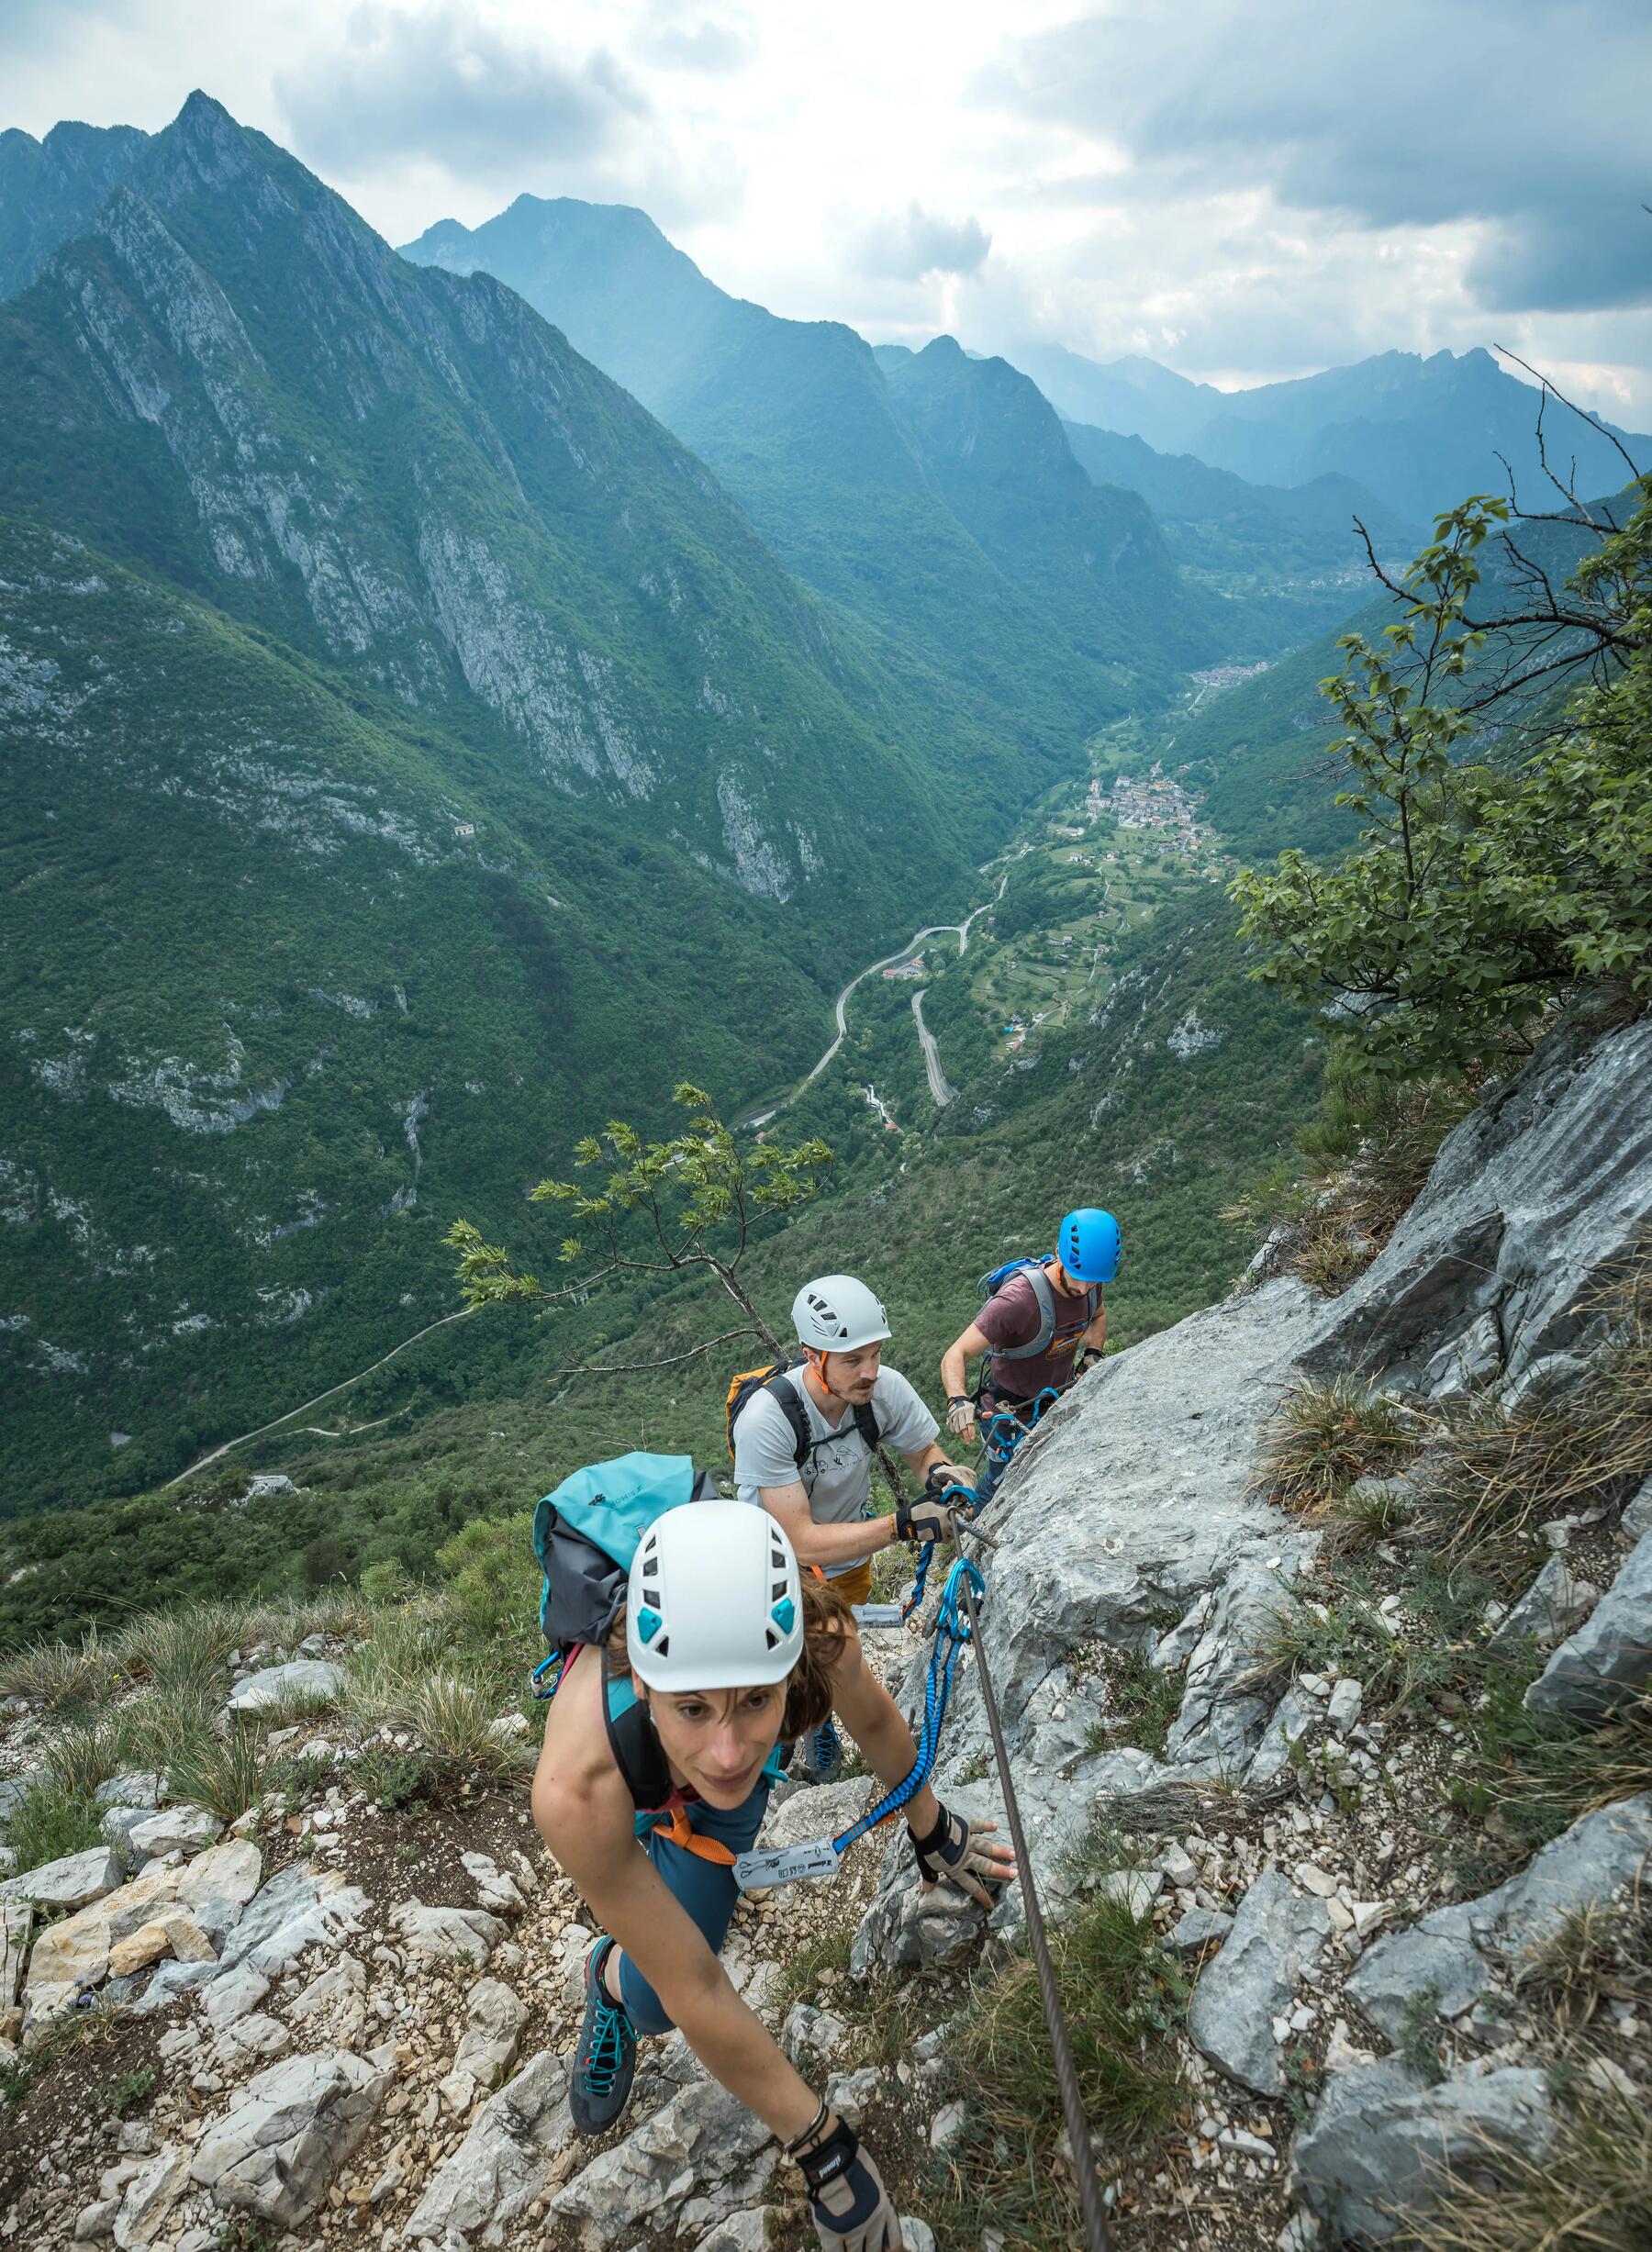 Grupa ludzi na szlaku vi ferrata ze sprzętem alpinistycznym